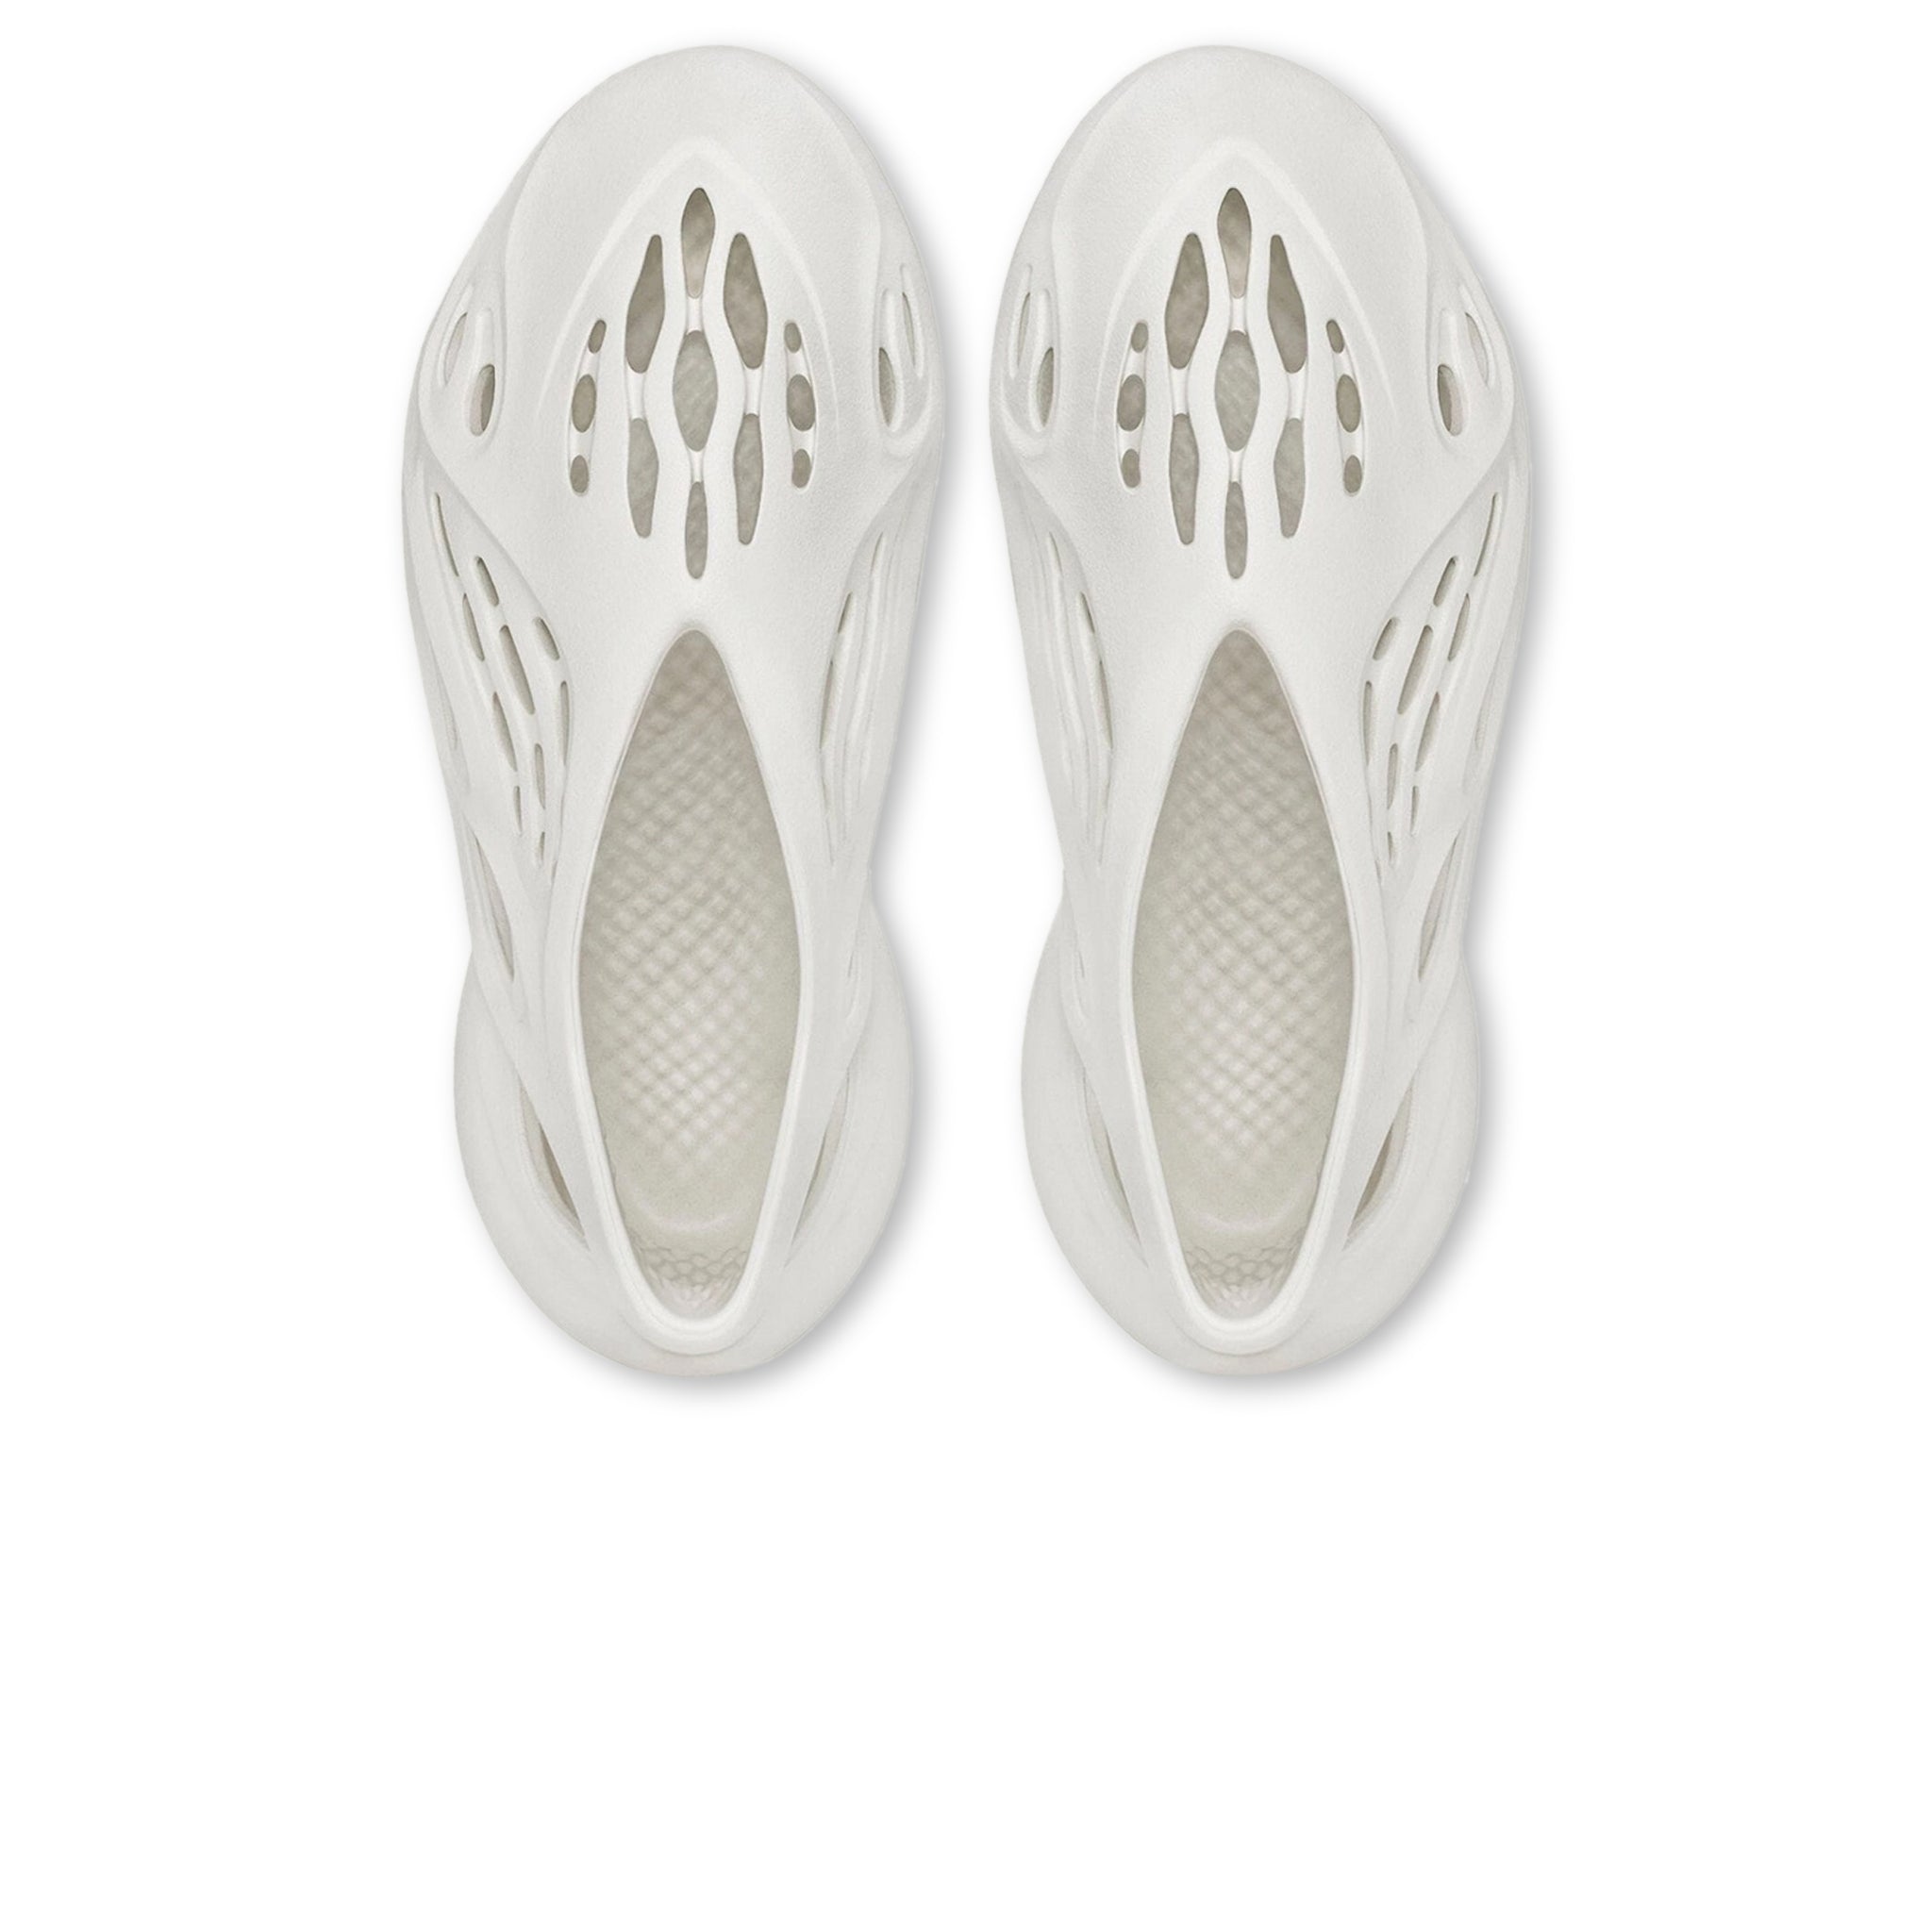 Yeezy Foam Runner Sand Jordans Bape Supreme Off White for